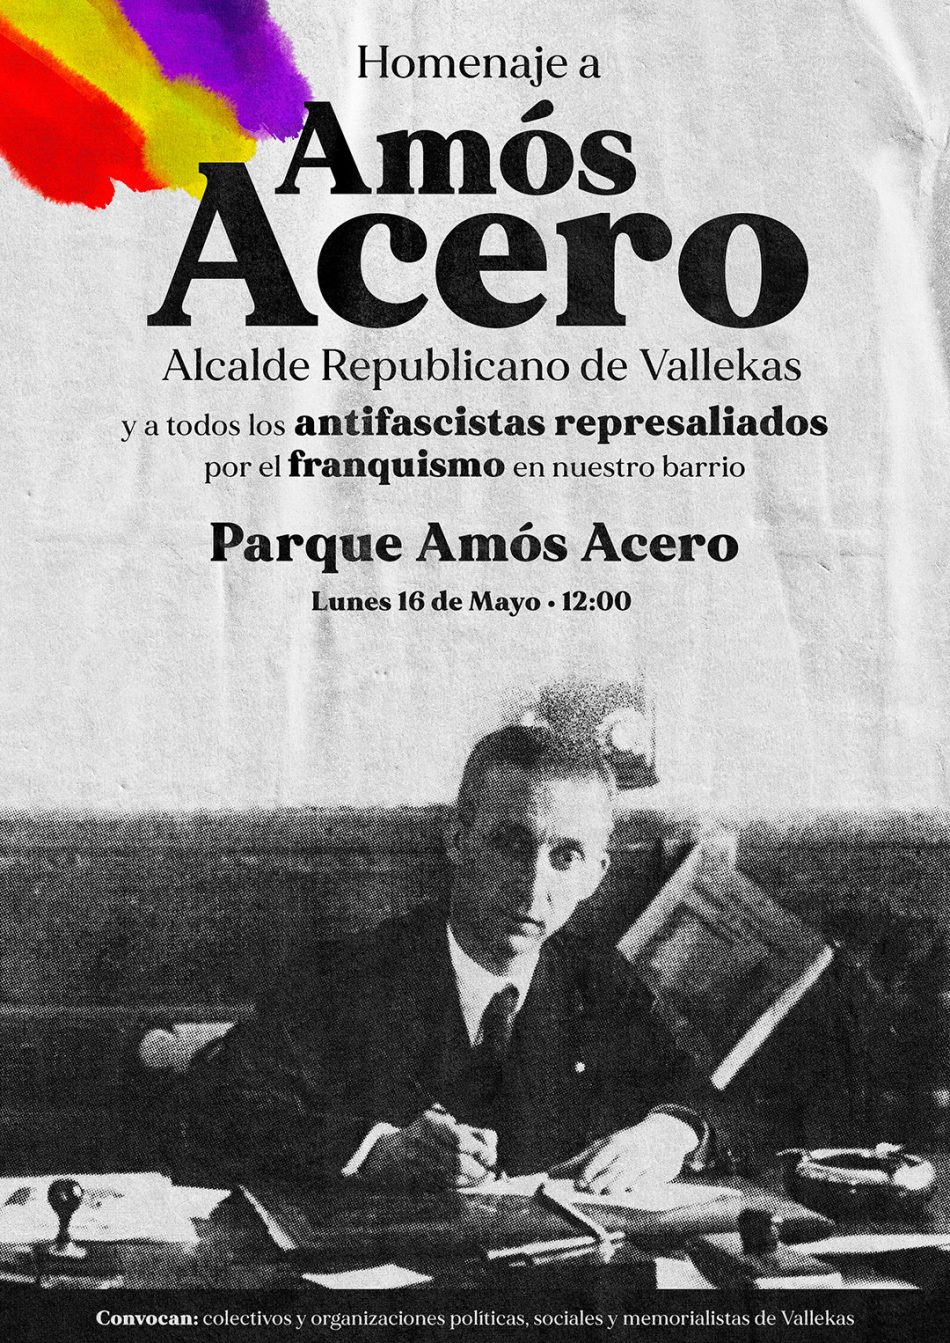 Homenaje a Amós Acero y todas y todos los antifranquistas de Vallecas